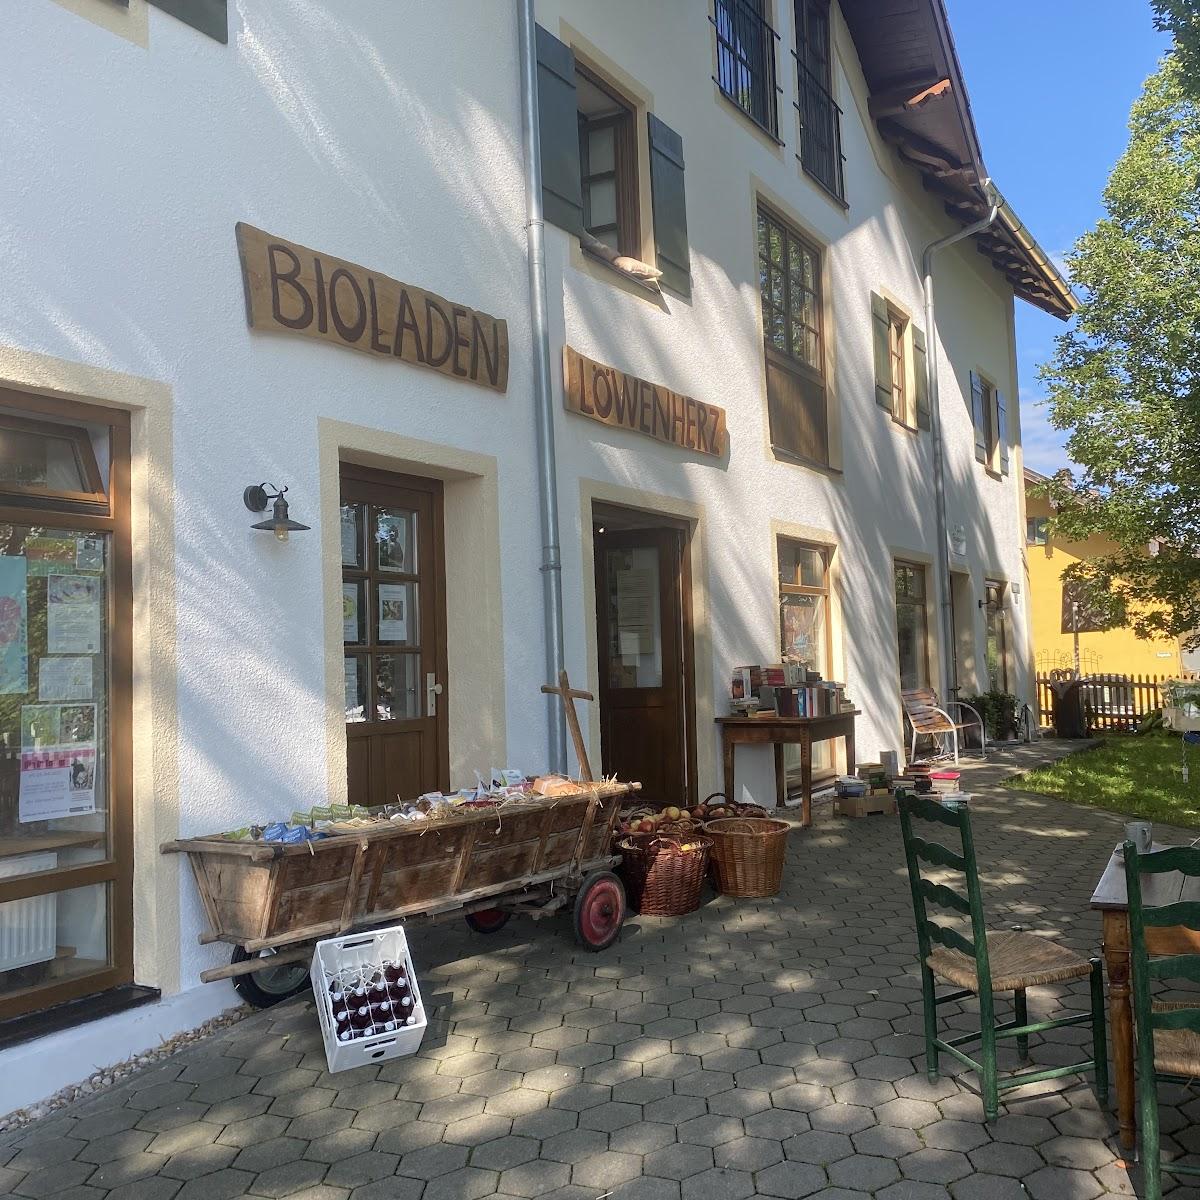 Restaurant "Bioladen Löwenherz" in Huglfing